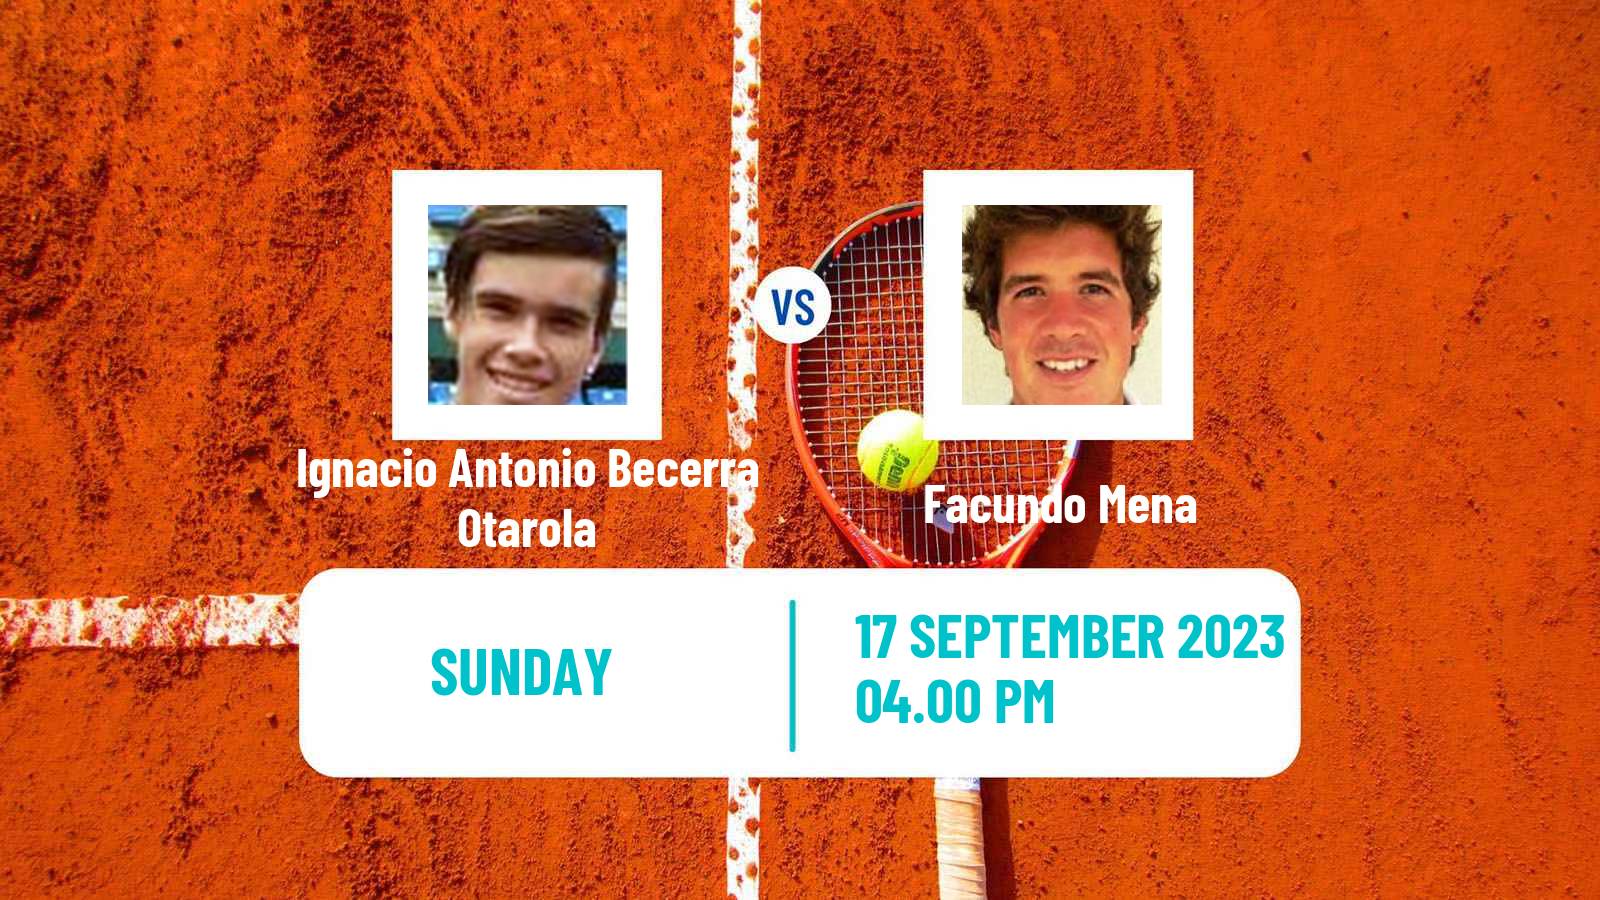 Tennis Antofagasta Challenger Men Ignacio Antonio Becerra Otarola - Facundo Mena